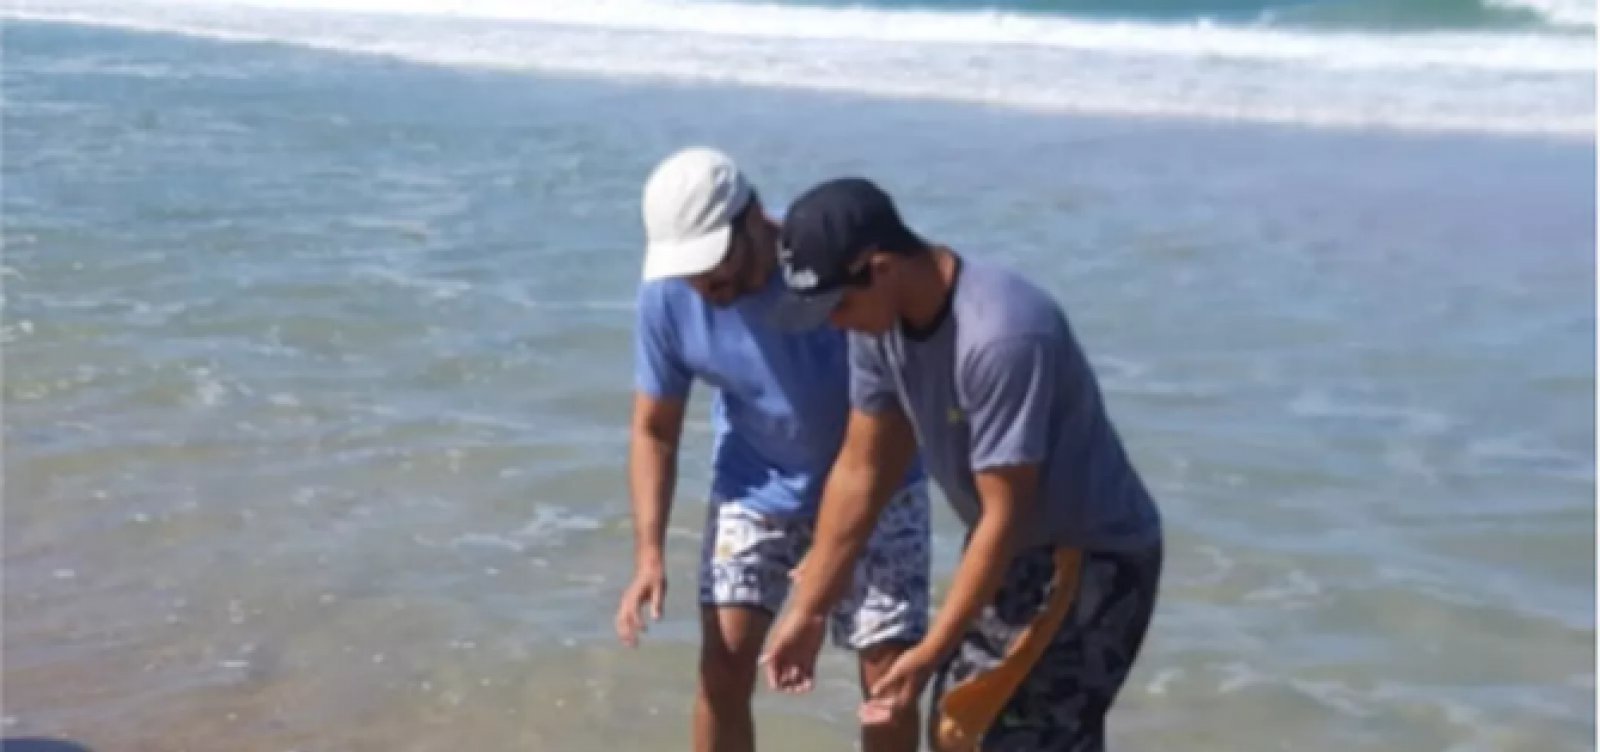 Ceará já contabiliza 23 tartarugas mortas após surgimento de manchas de óleo no mar